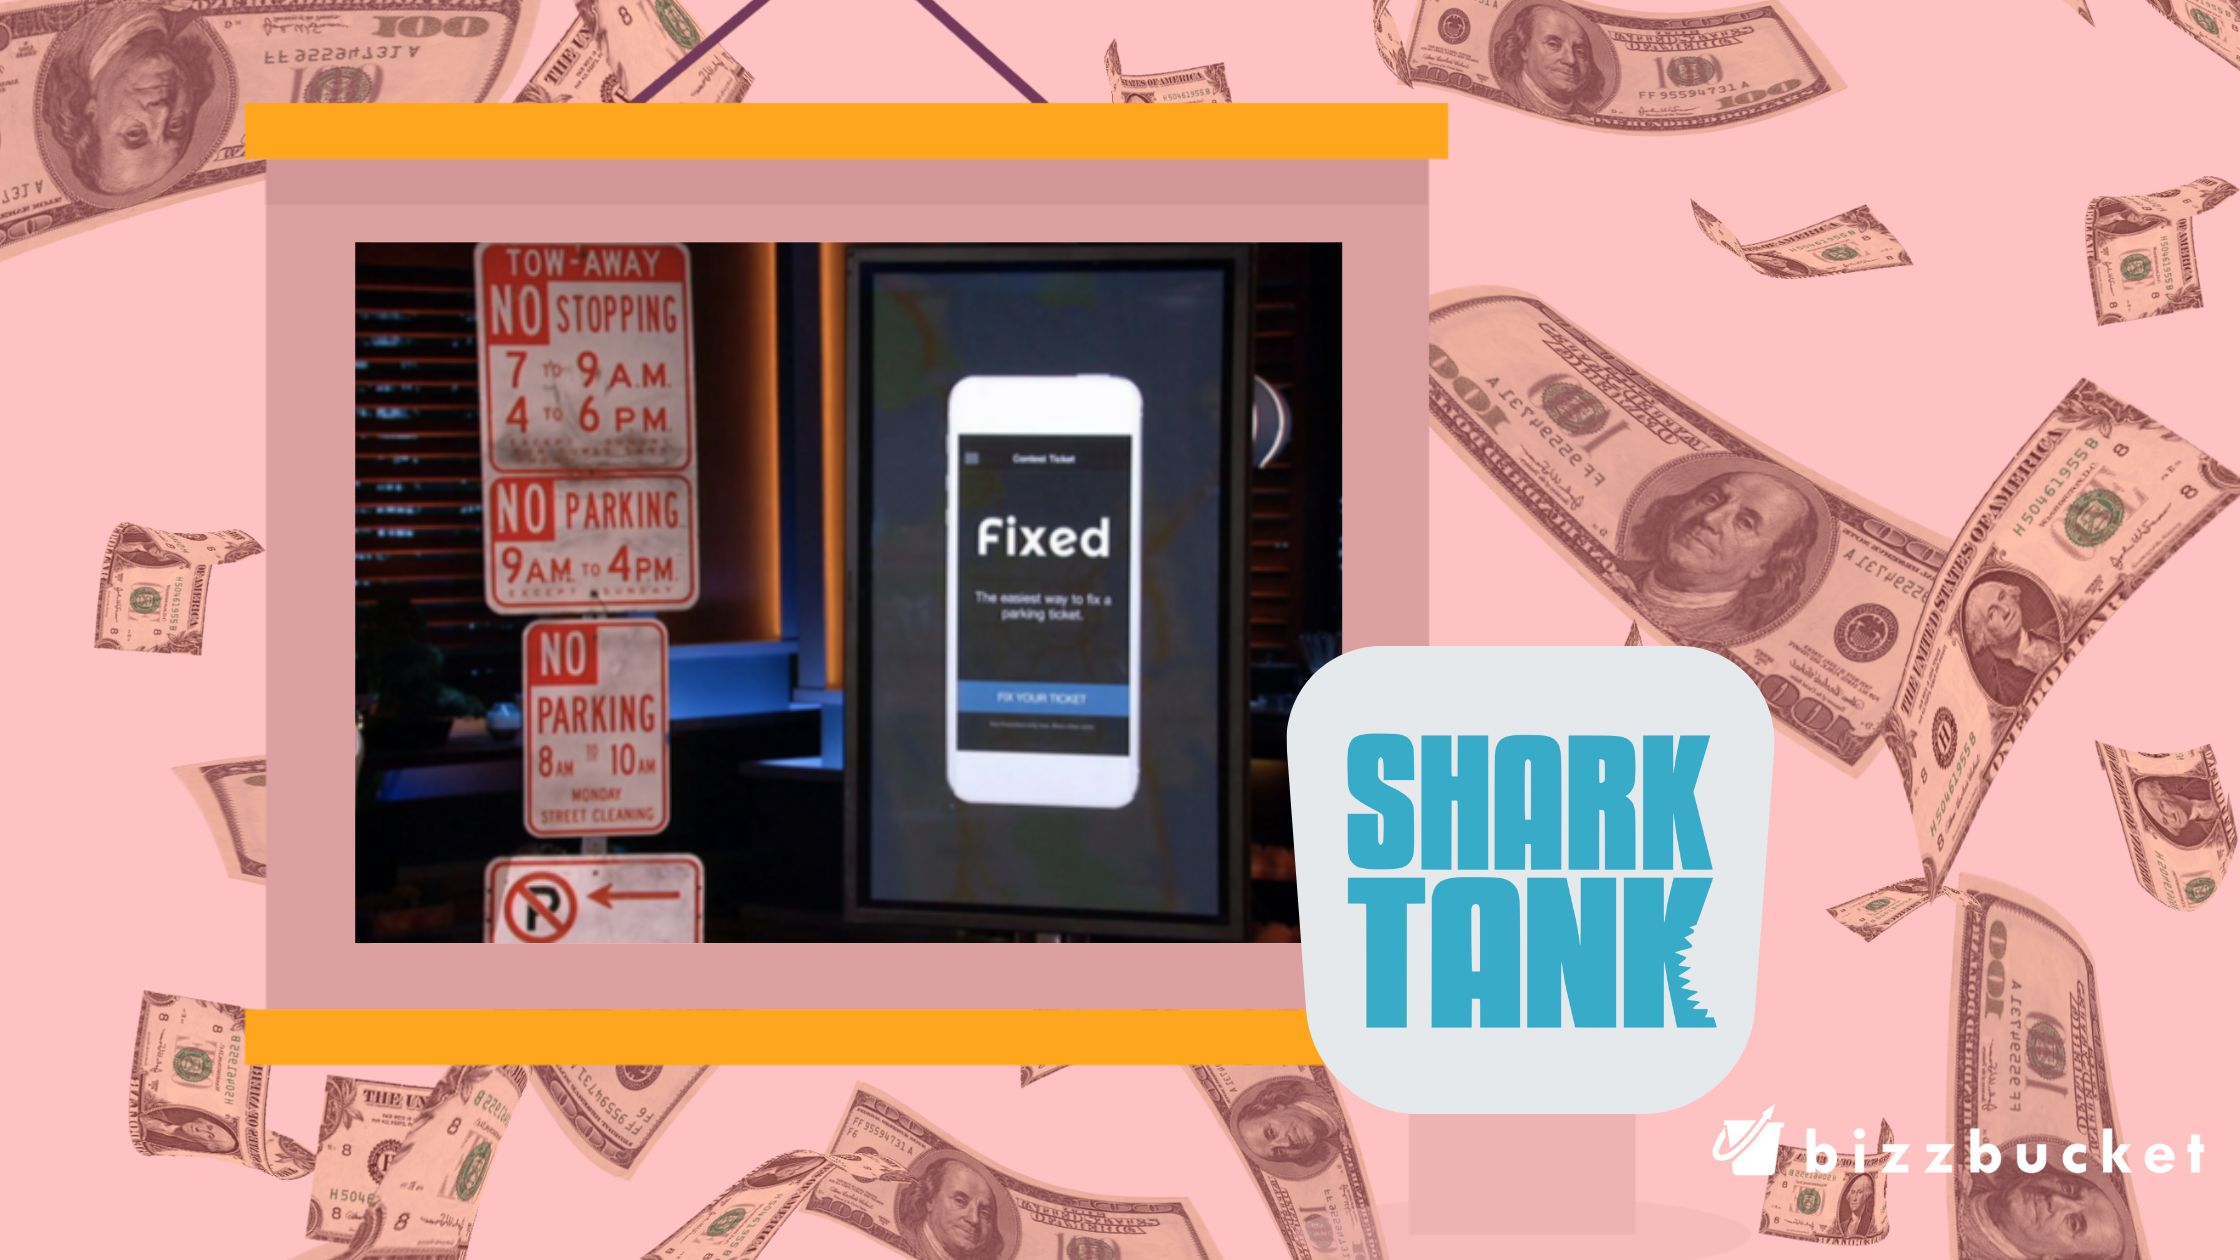 Fixed App shark tank